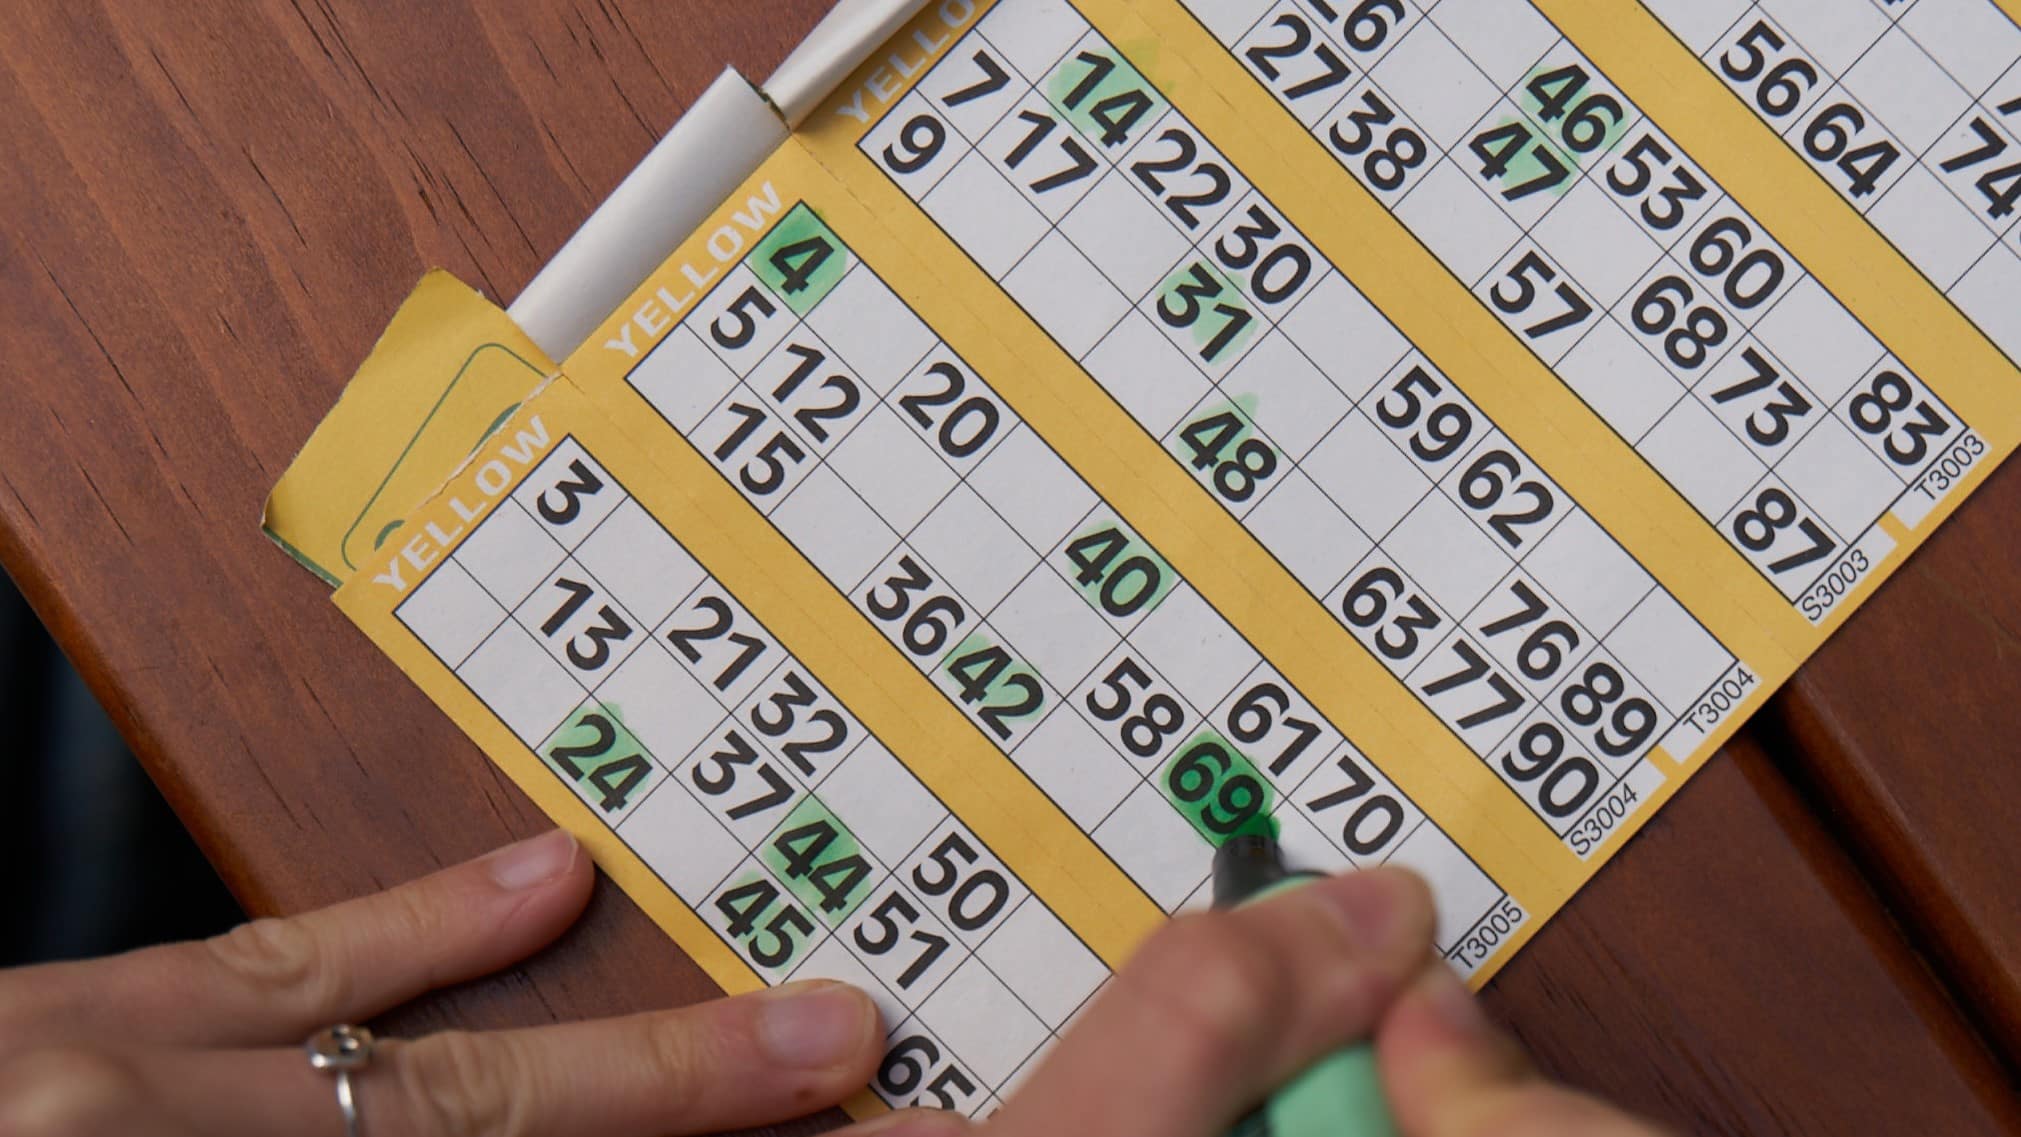 A bingo score sheet